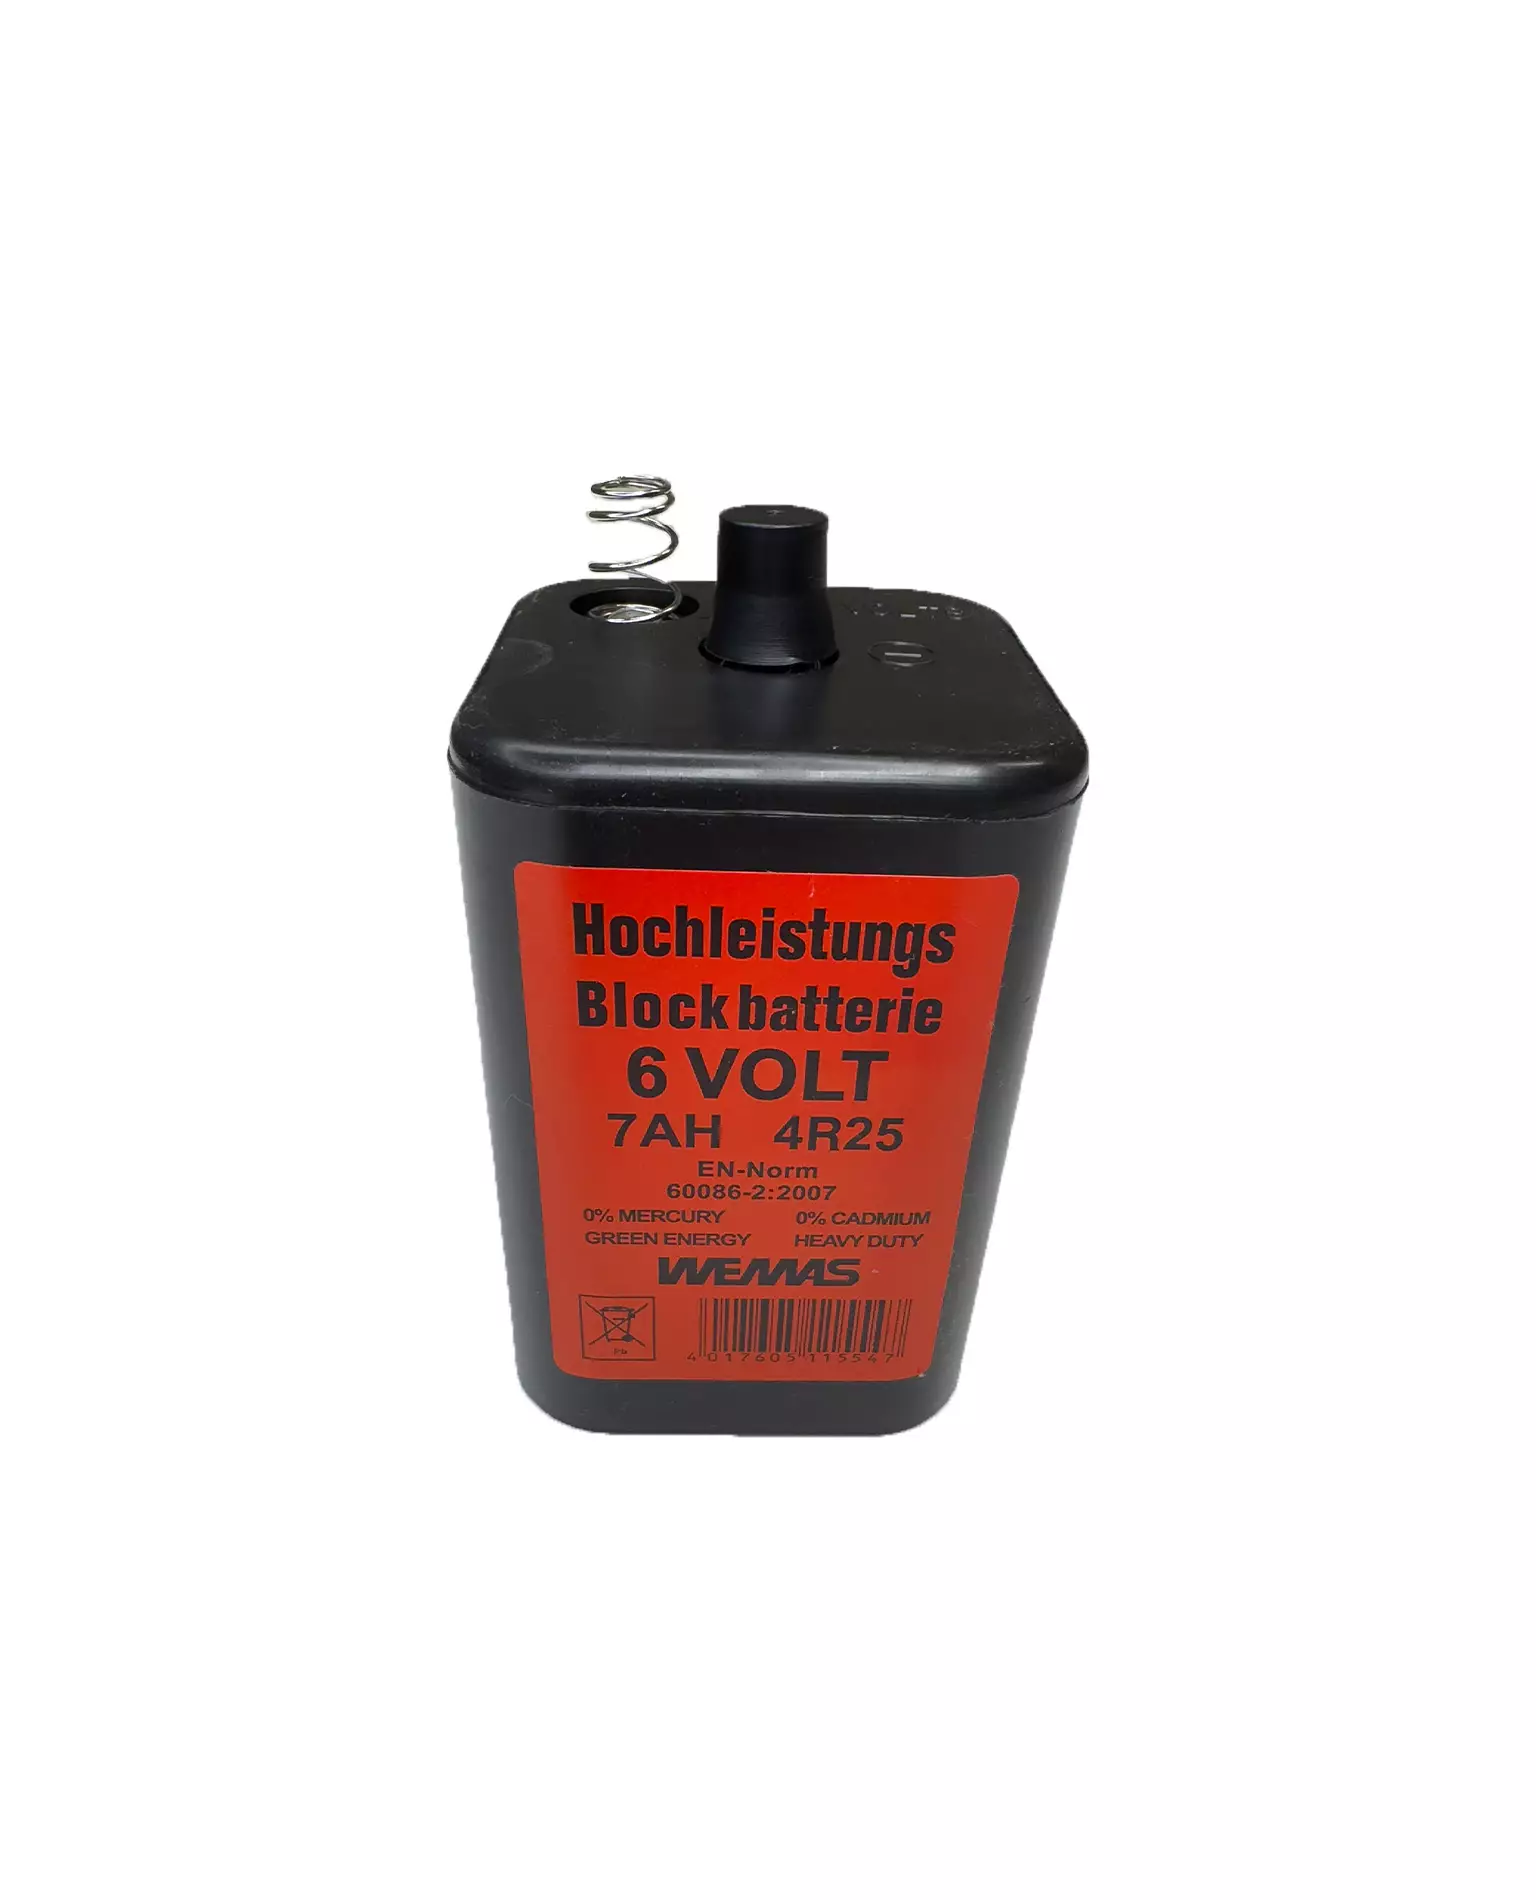 Hochleistungs-Blockbatterie 6 Volt 7 AH